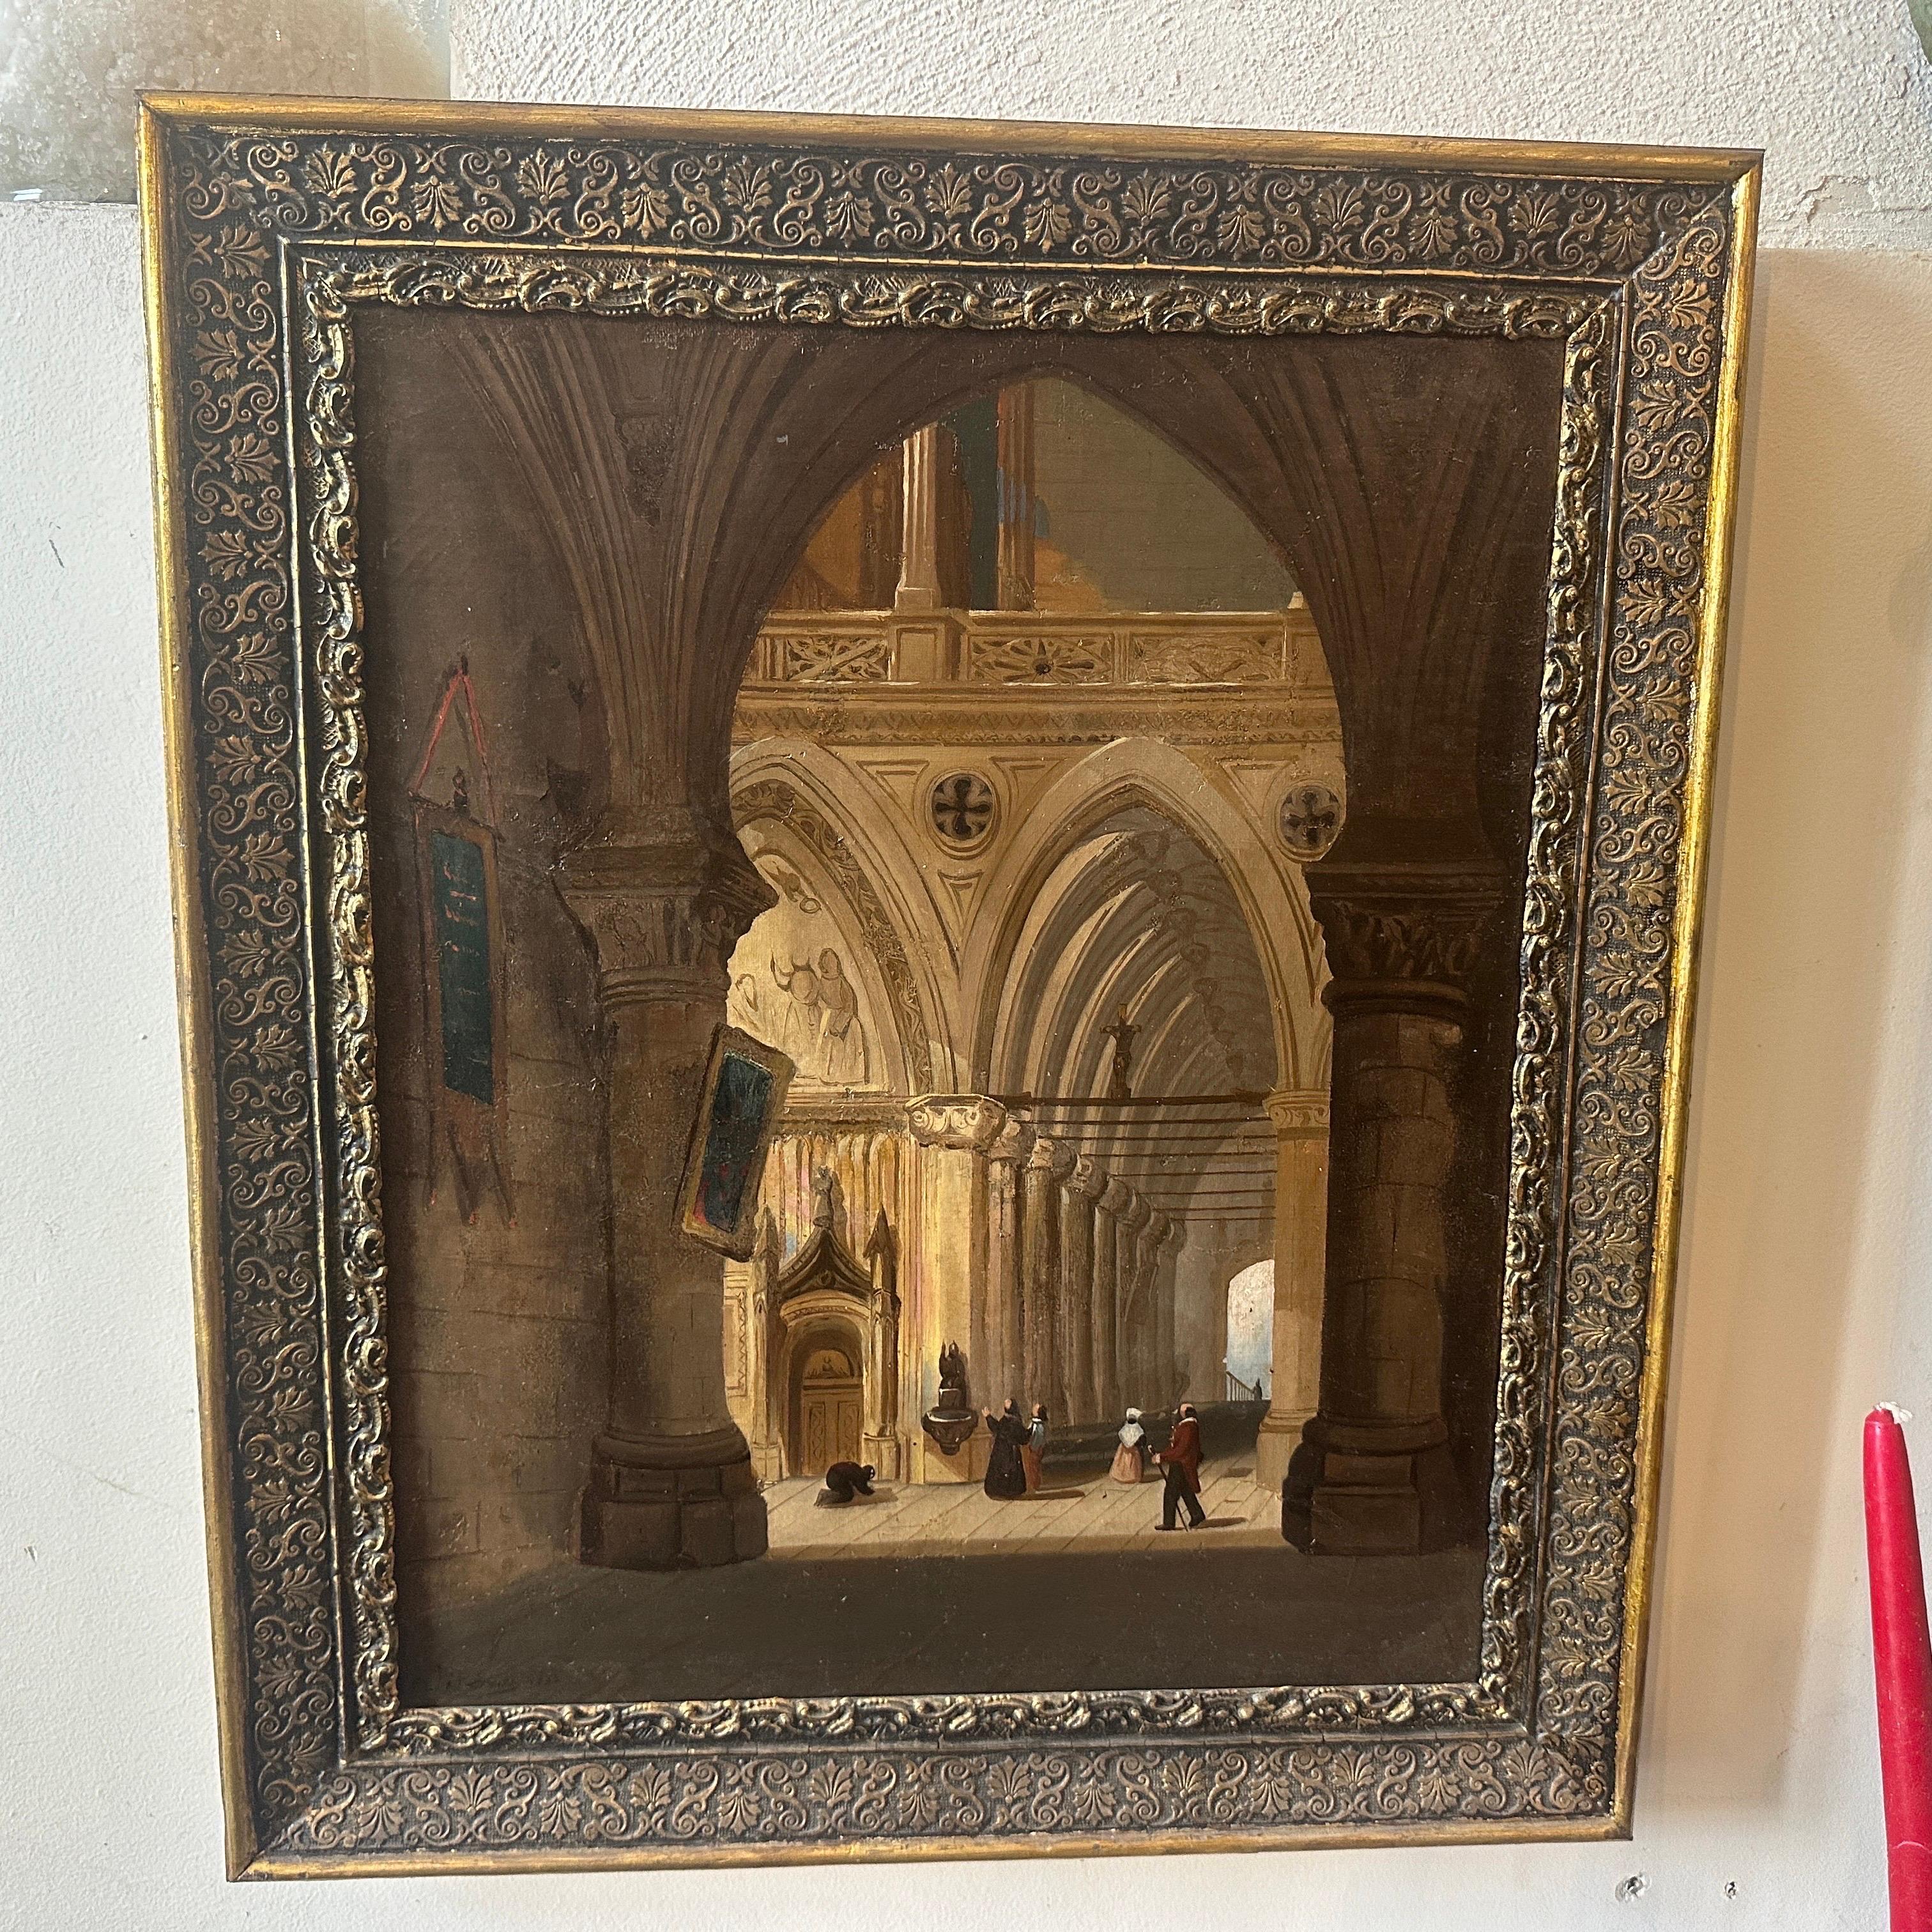 Dieses itaiische Gemälde, das das Innere einer Kirche zeigt, verdeutlicht die künstlerischen und religiösen Einflüsse der damaligen Zeit. Das Gemälde zeigt eine ausgewogene Anordnung der Elemente im Kircheninneren. Der Künstler hat sich auf die